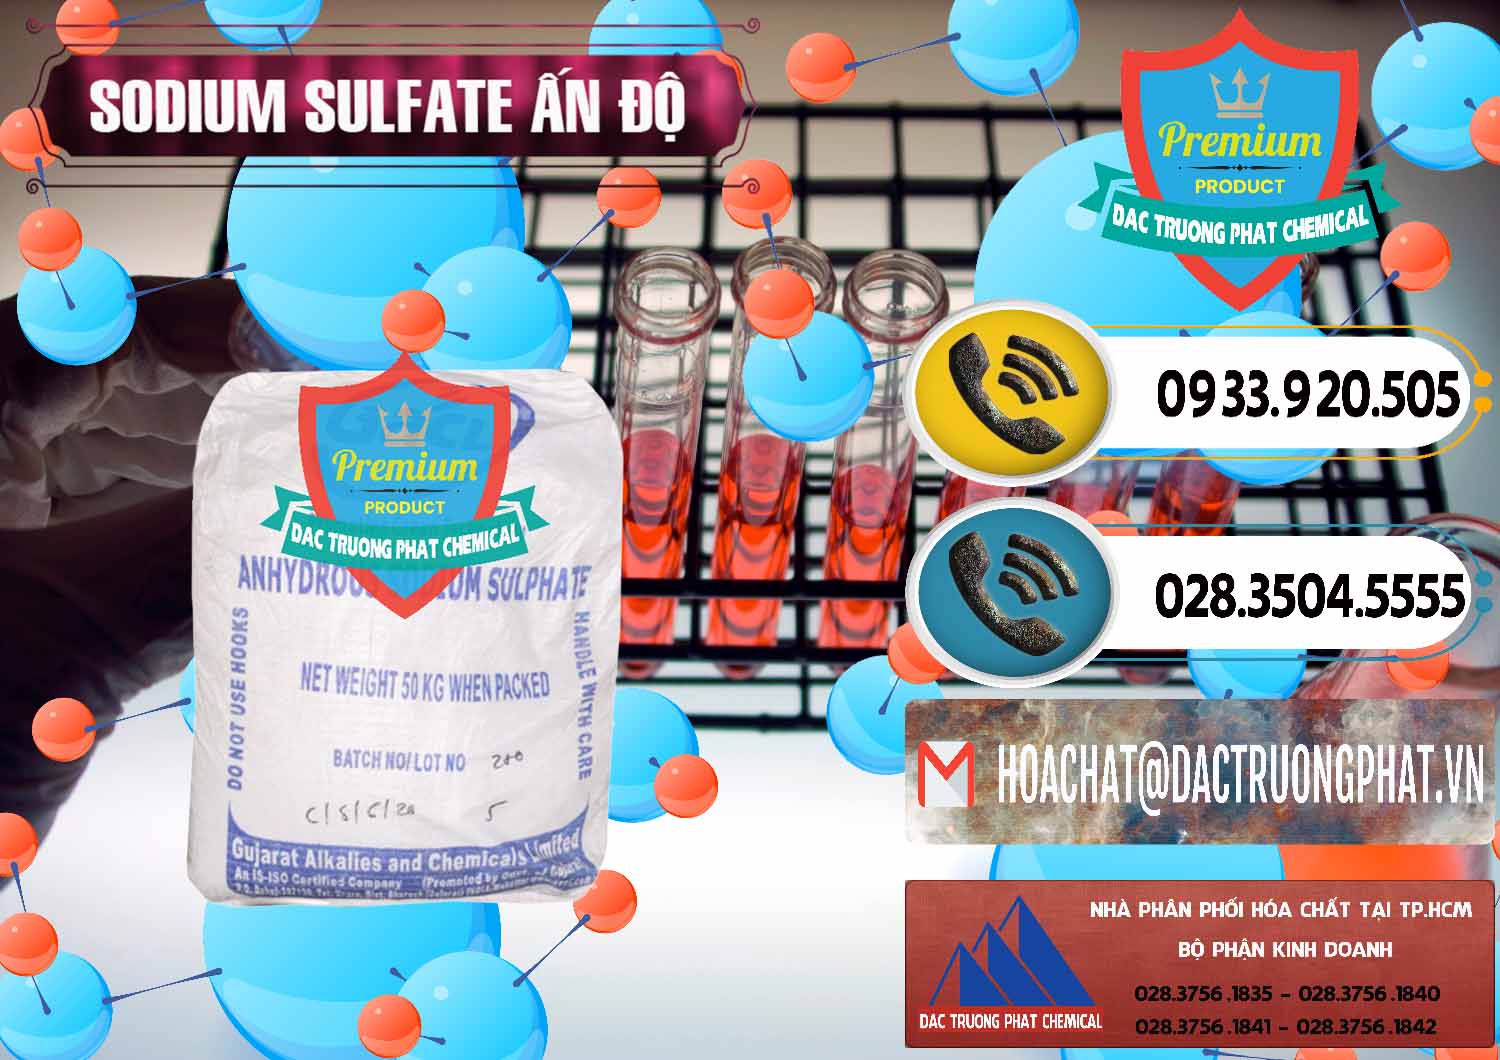 Cung cấp ( bán ) Sodium Sulphate - Muối Sunfat Na2SO4 GACL Ấn Độ India - 0461 - Công ty chuyên kinh doanh & phân phối hóa chất tại TP.HCM - hoachatdetnhuom.vn